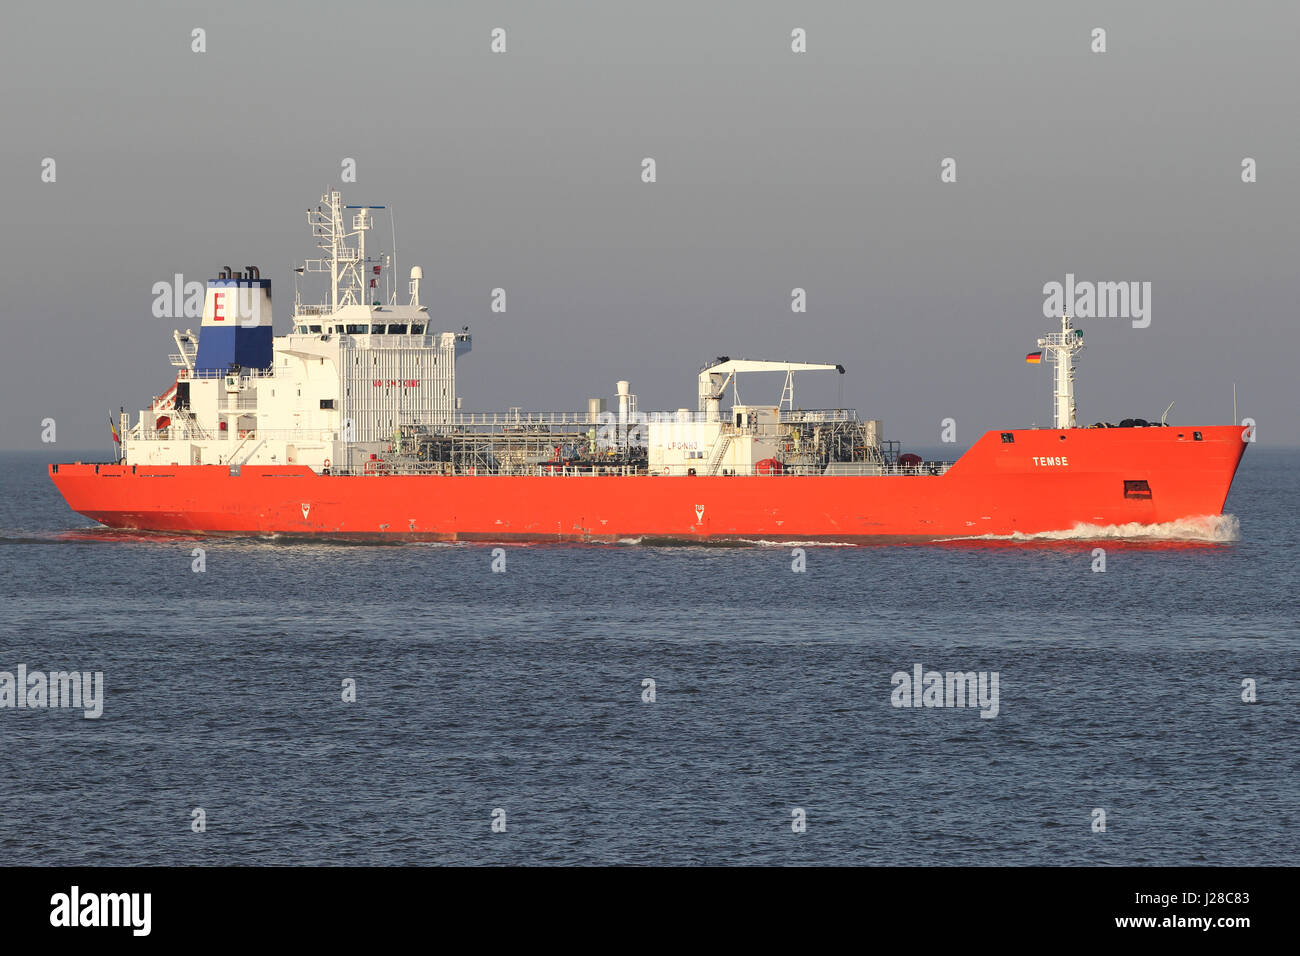 Semi-gekühlte LPG-Tanker TEMSE an der Elbe. Exmar ist eine belgische Reederei und an der Euronext Brüssel notiert. Stockfoto